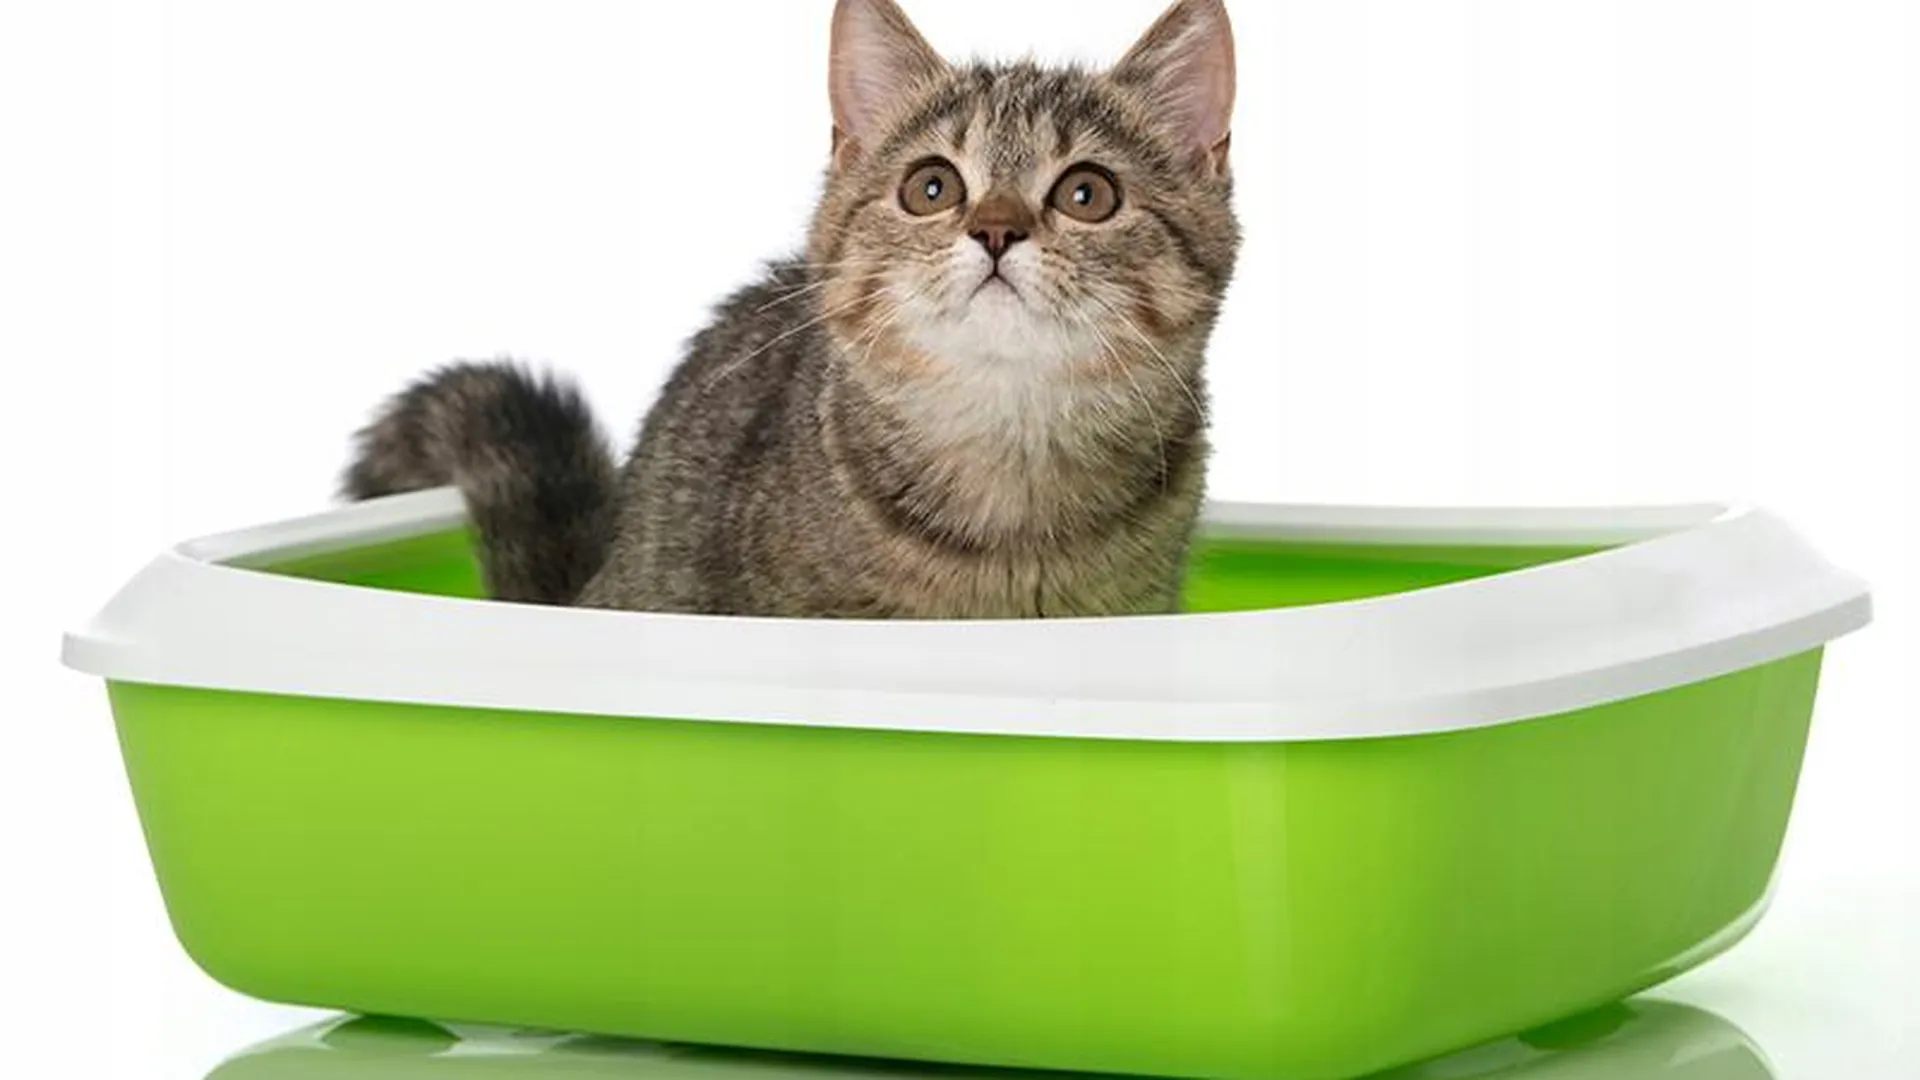  Солнечногорский предприниматель хочет охватить своим наполнителем все кошачьи туалеты России